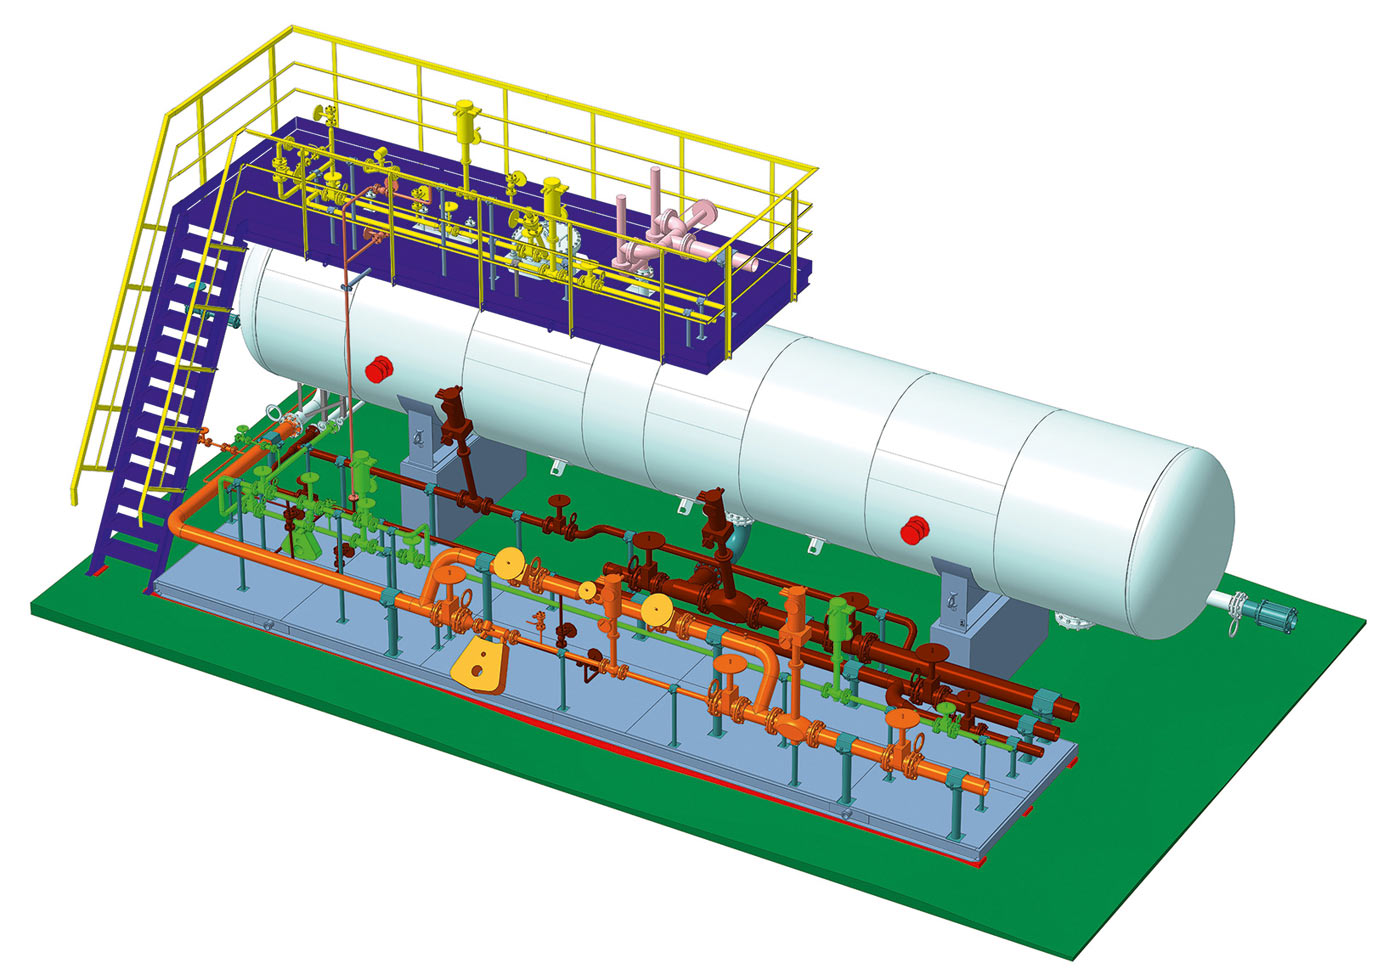 Модель блока нефтяного сепаратора со сбросом воды, «Сибнефтемаш» (Тюмень). Проект одержал победу в номинации «Машиностроение. От 1000 до 4999 деталей в сборке» на Конкурсе асов 3D-моделирования в 2017 году